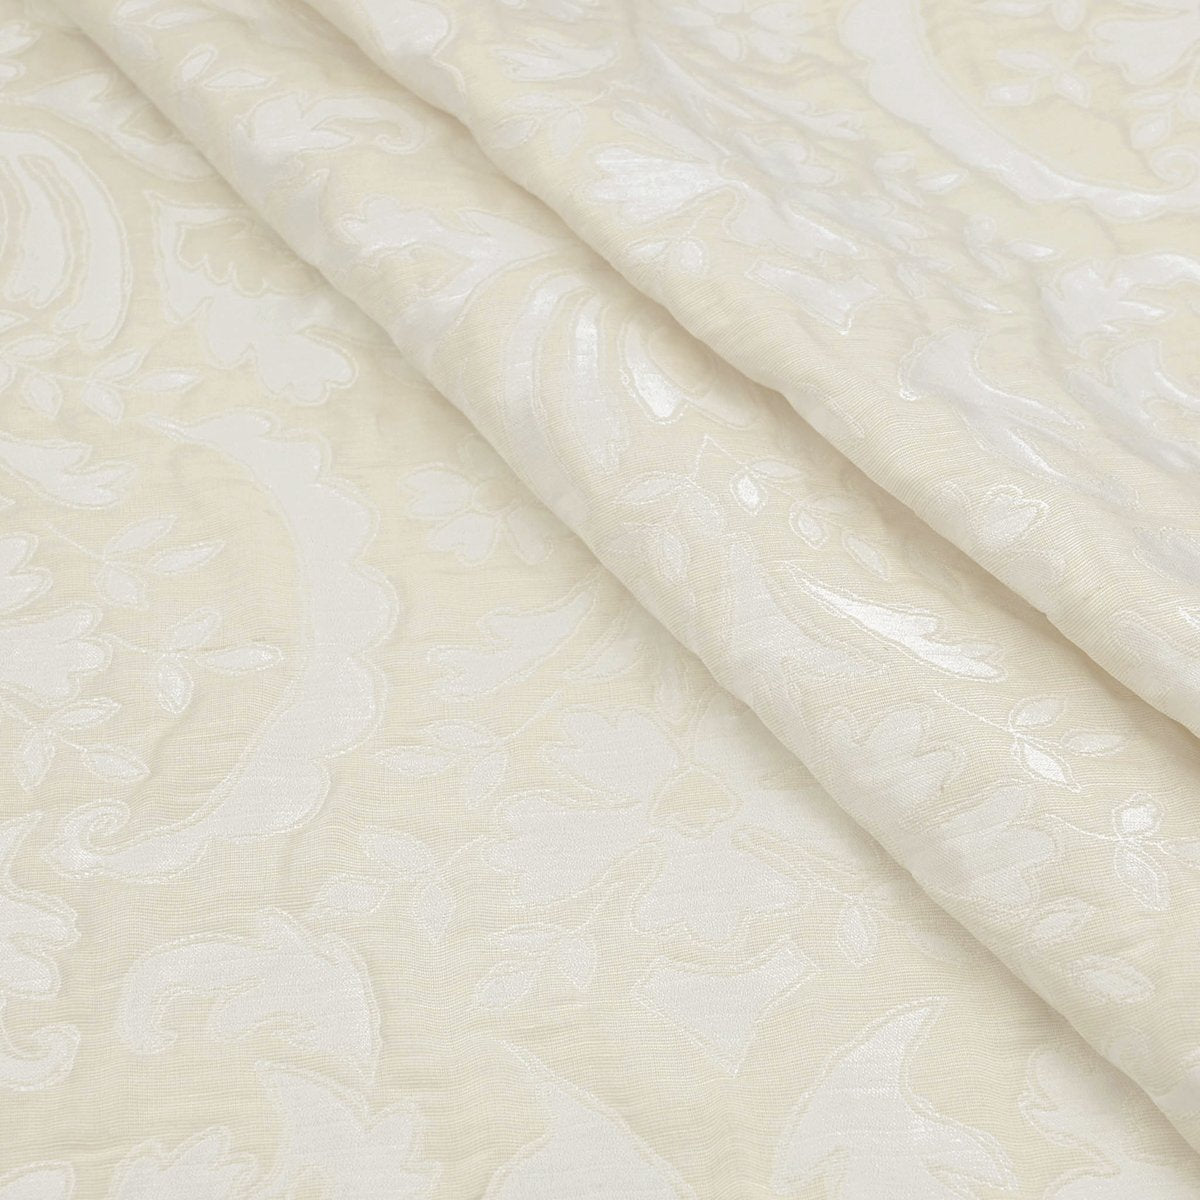 Cream Floral Jacquard Fabric 97605